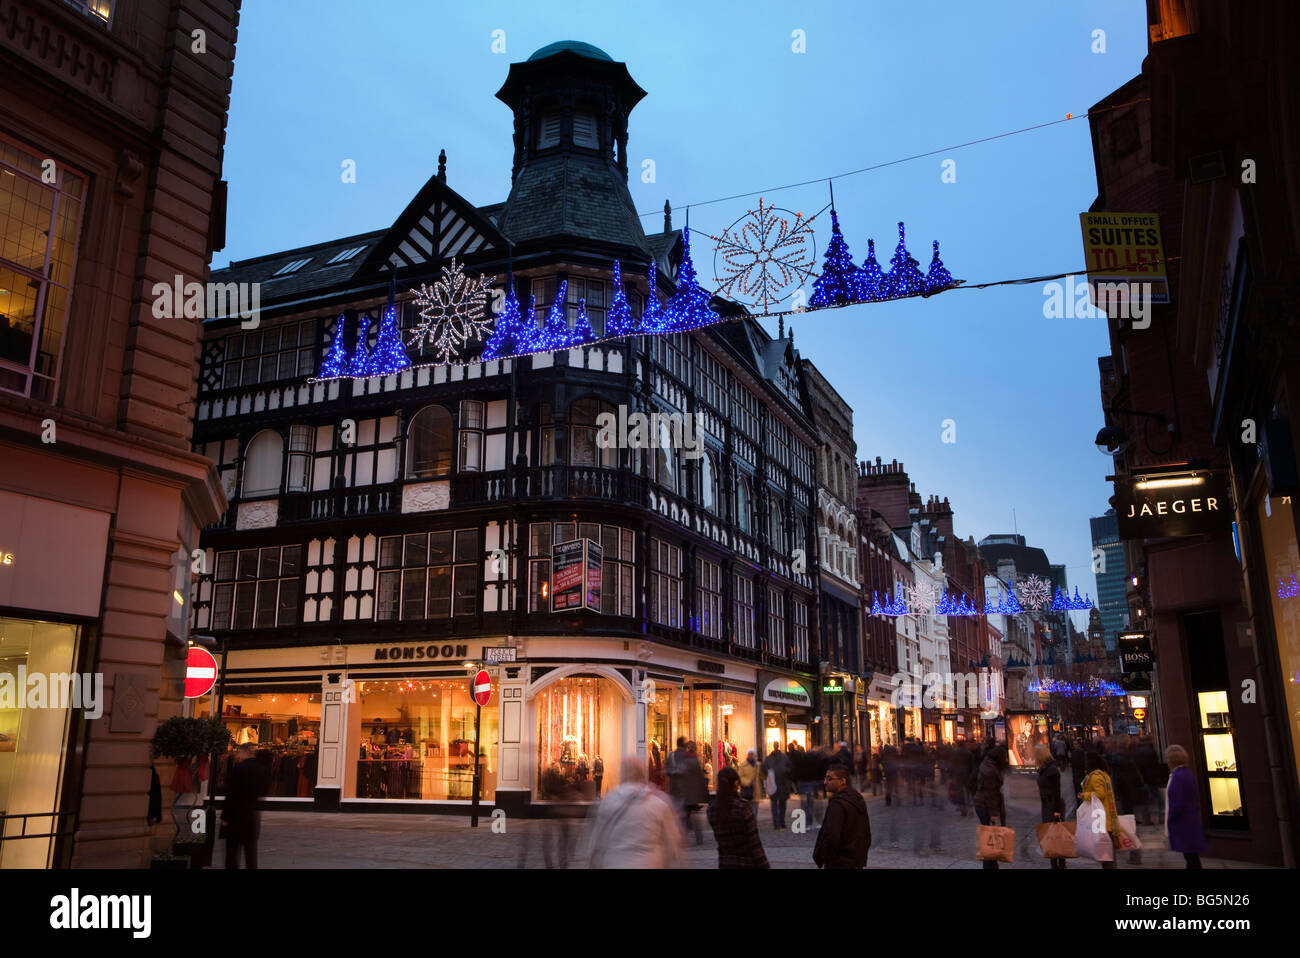 Royaume-uni, Angleterre, Manchester, King Street, les lumières de Noël au-dessus de shoppers Banque D'Images